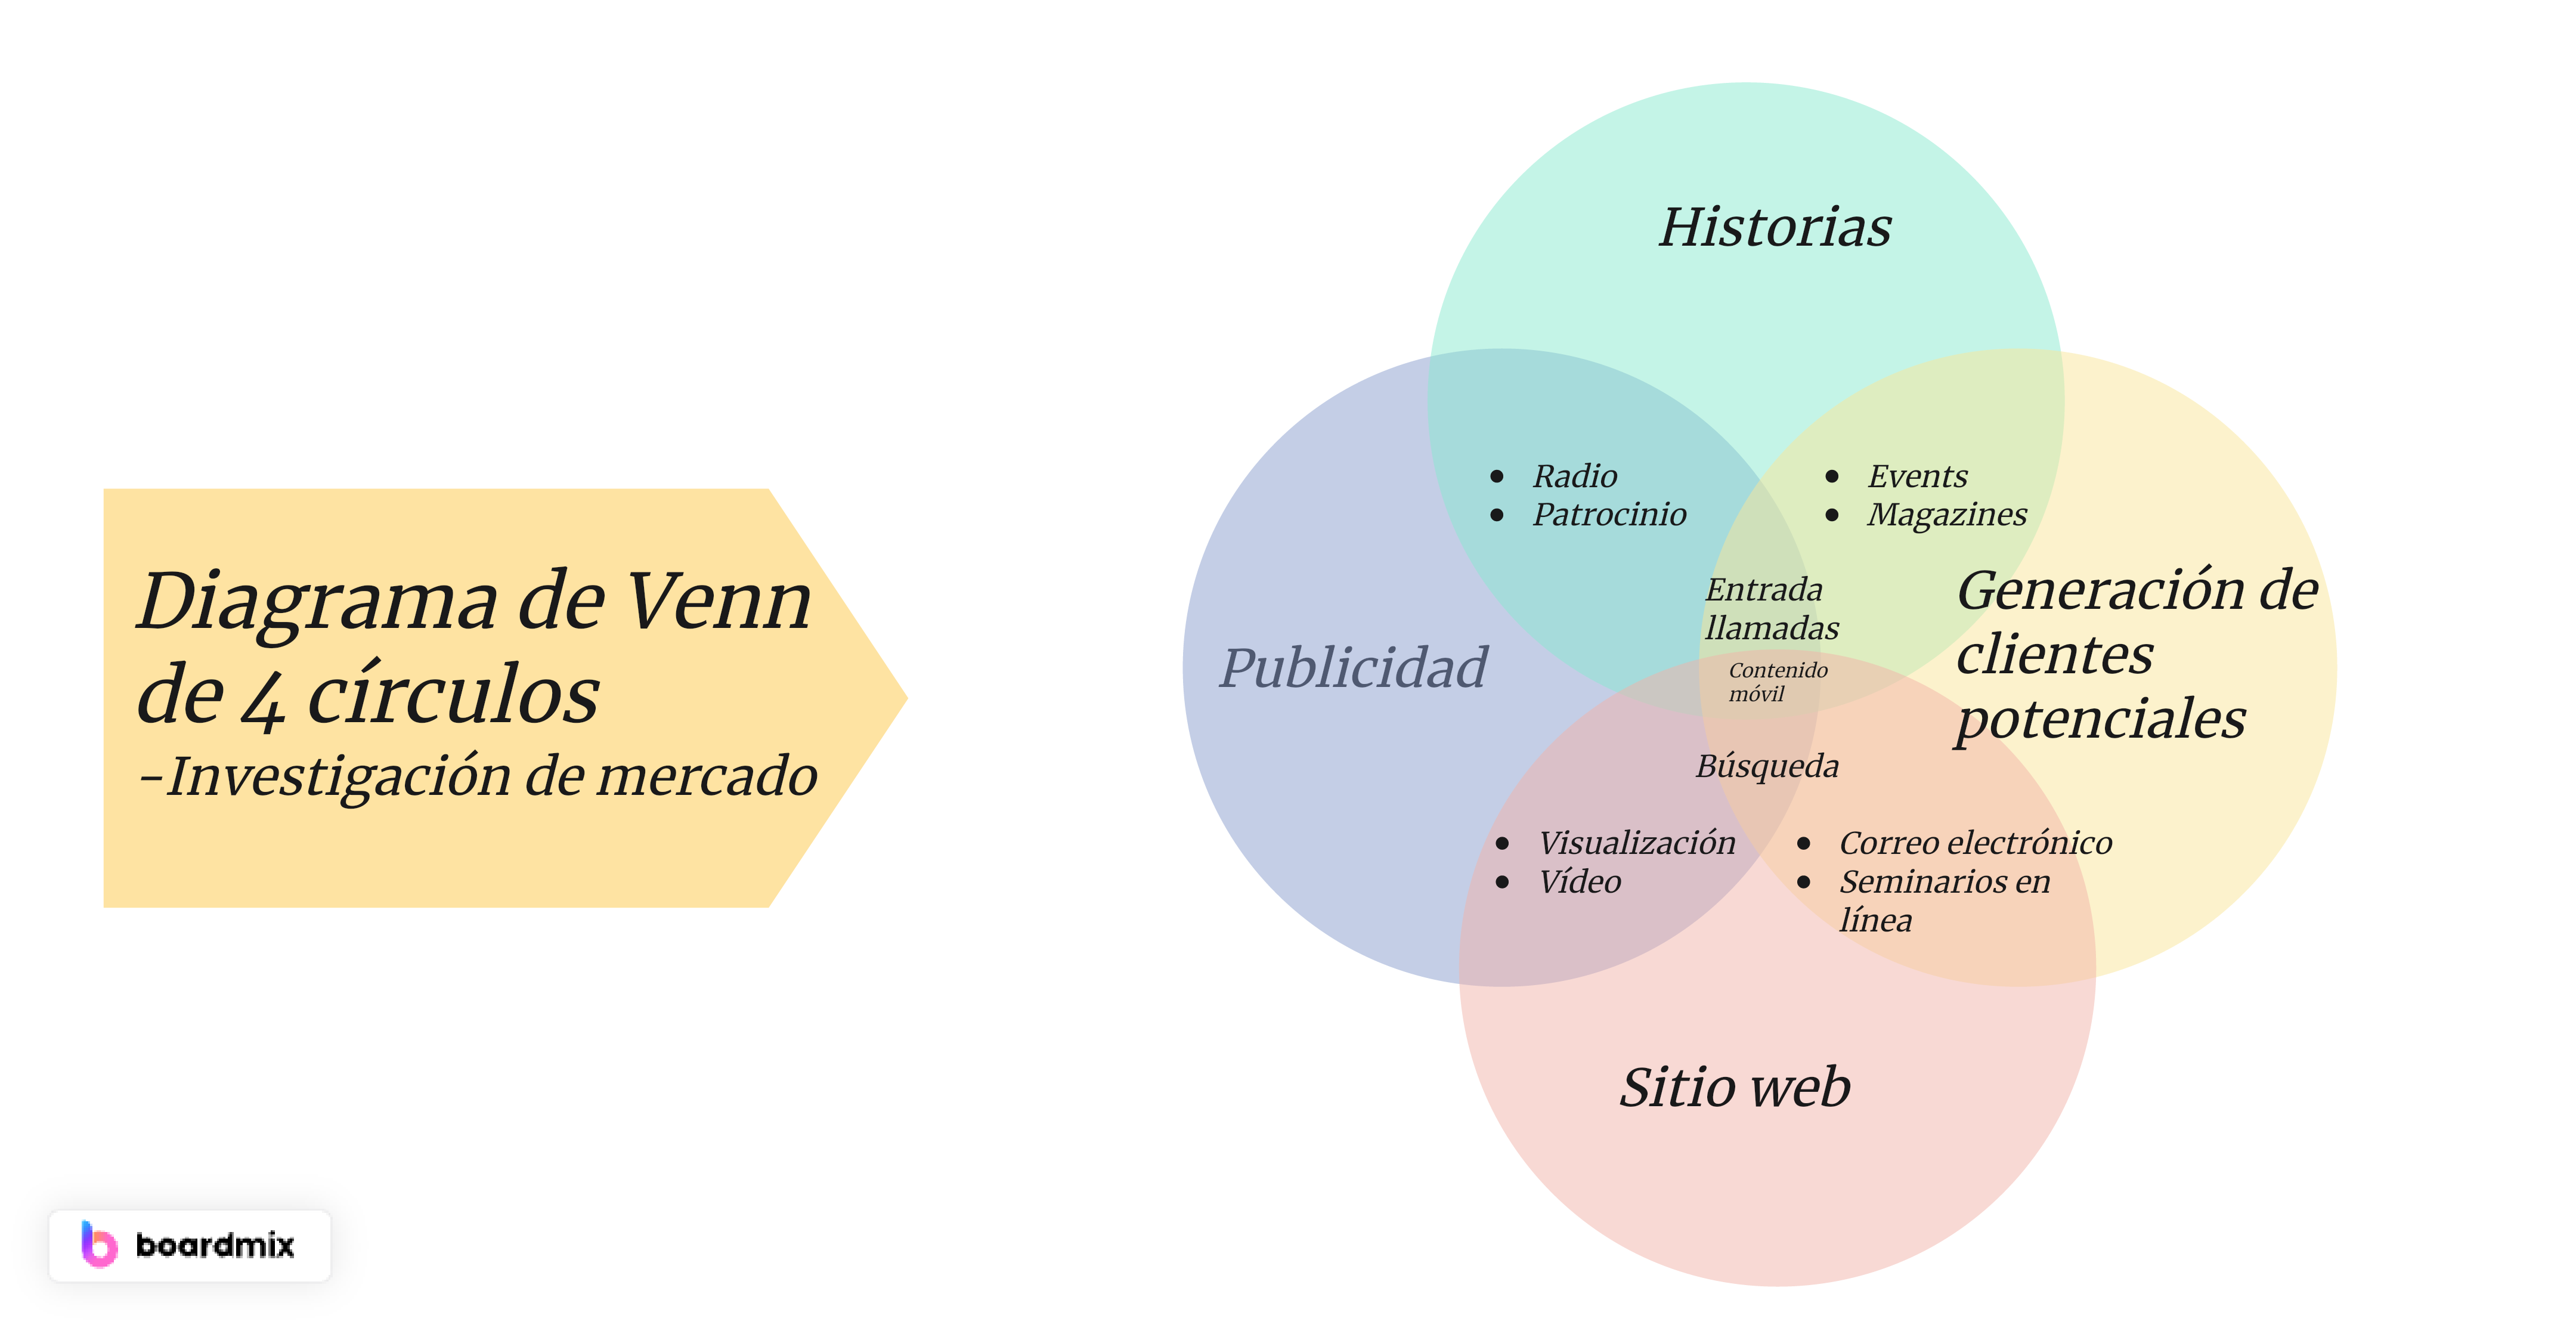 Diagrama de Venn de 4 círculos en la investigación de mercado